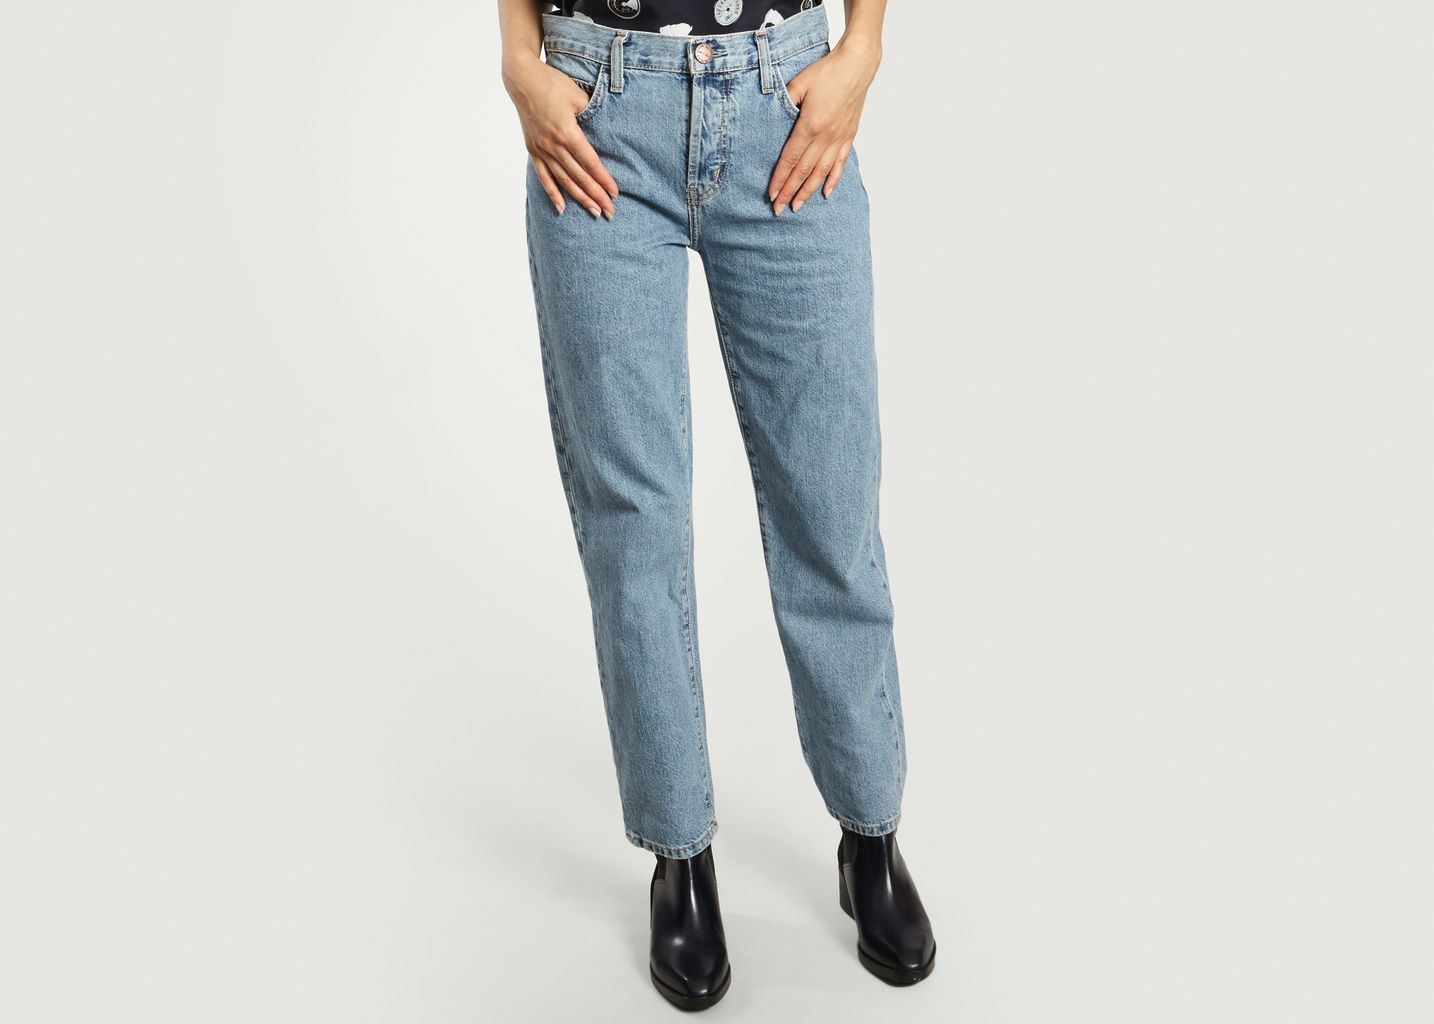 Gerade Jeans The Original - Current/Elliott